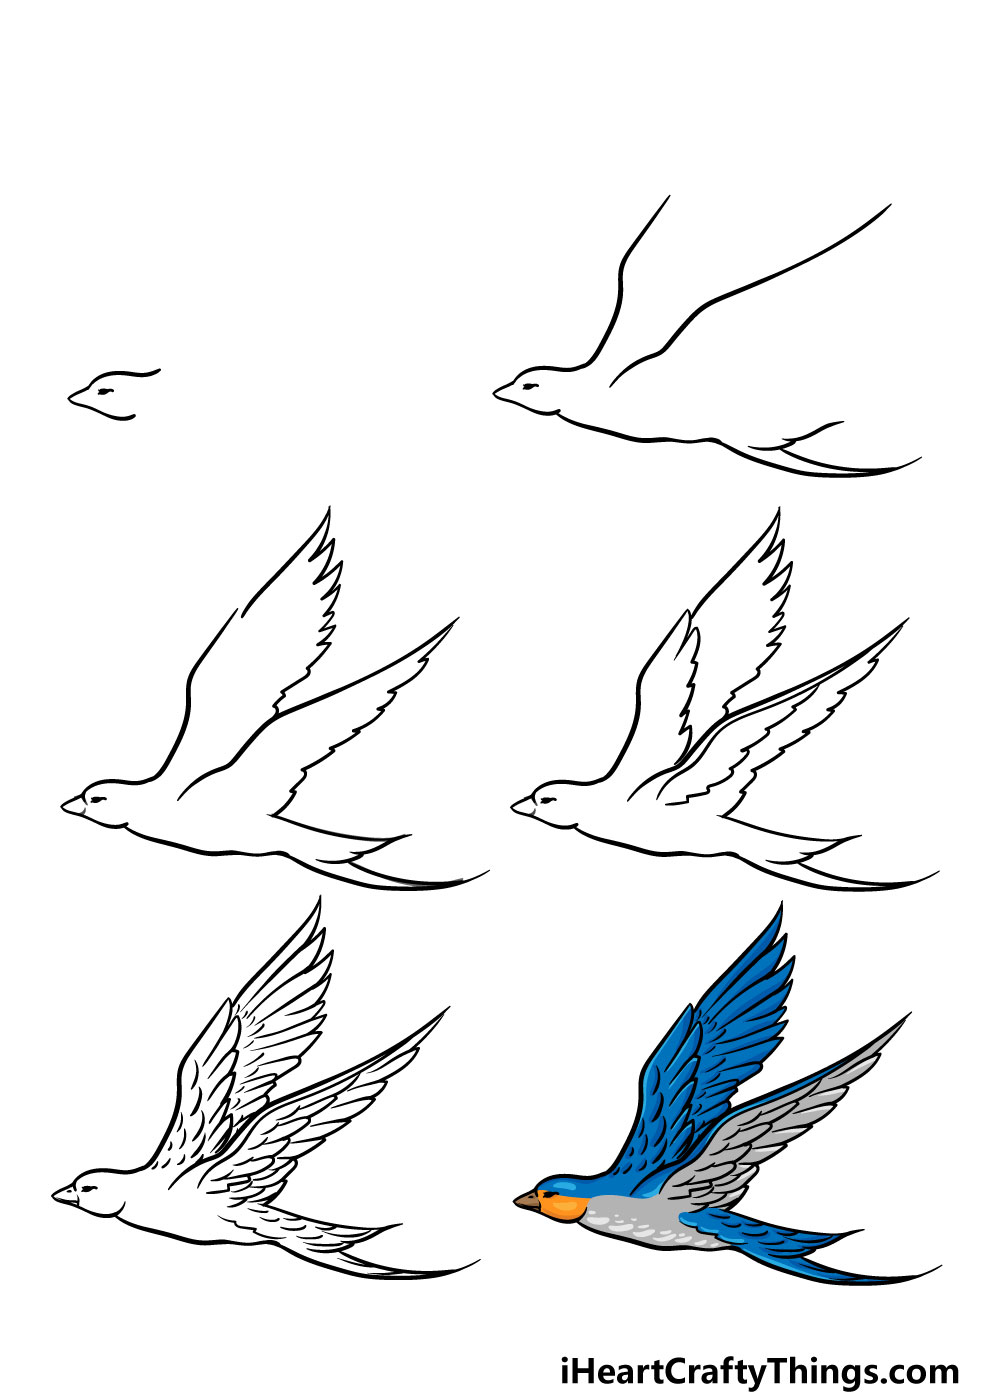 Hướng Dẫn Cách Vẽ Con Chim Dễ Nhất Chi Tiết Từ A-Z